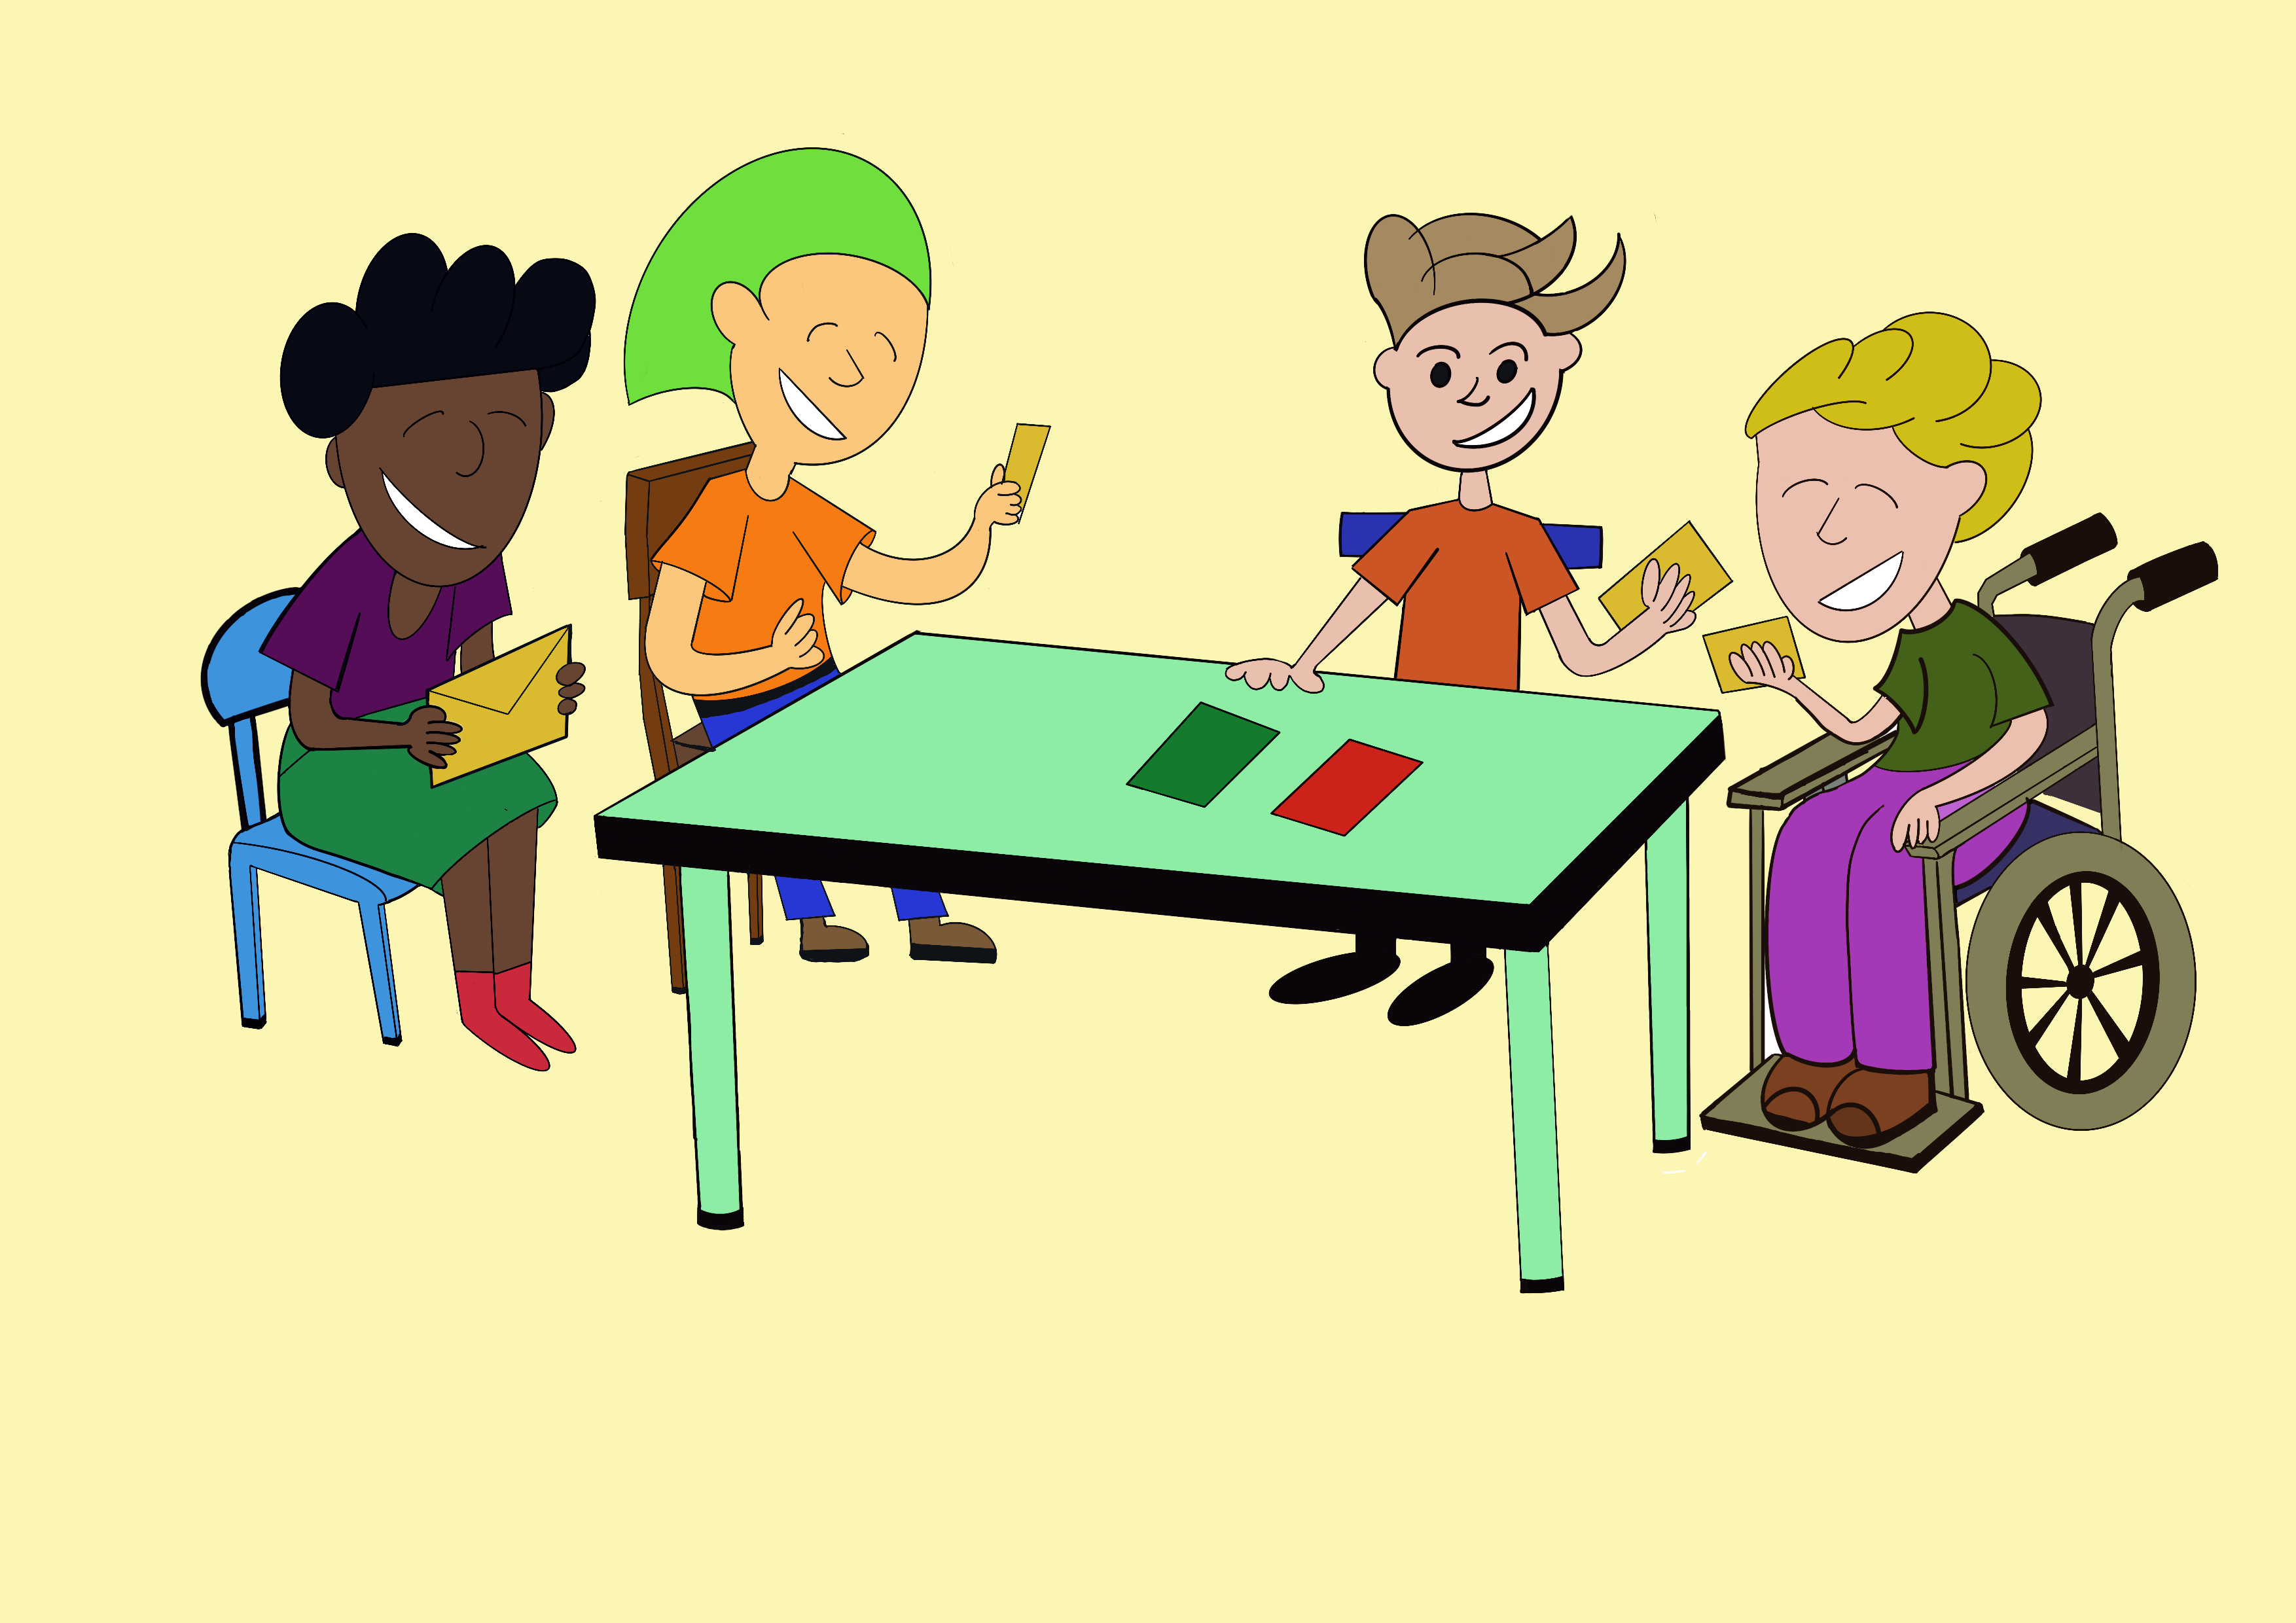 La imagen muestra un grupo de niños jugando alrededor de una mesa